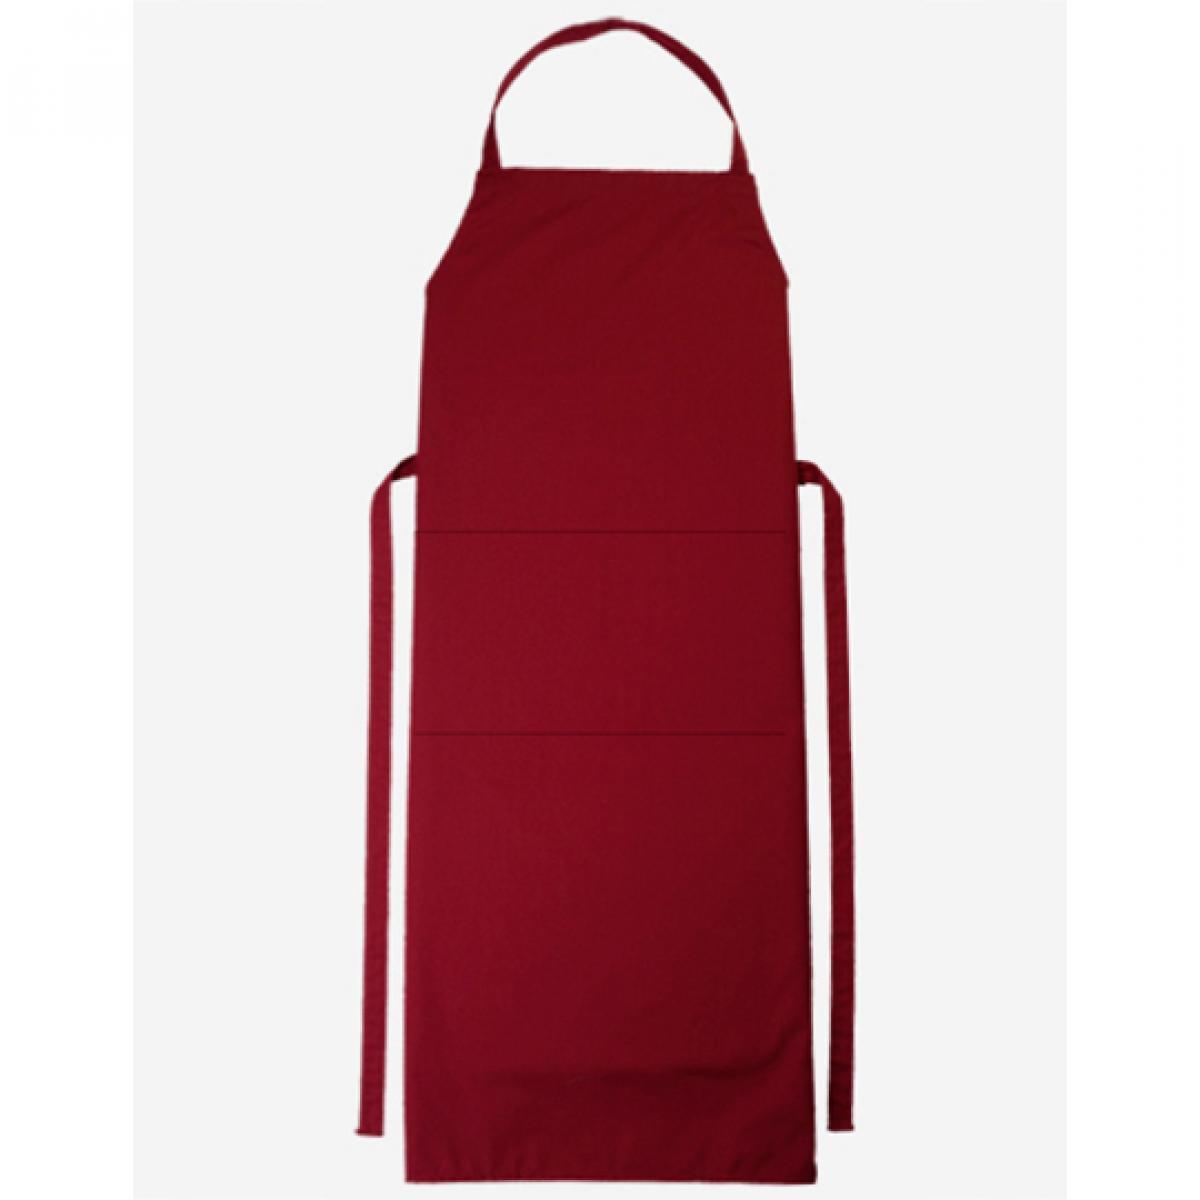 Hersteller: CG Workwear Herstellernummer: 01146-01 Artikelbezeichnung: Latzschürze Verona Classic Bag 90 x 75 cm Farbe: Cherry